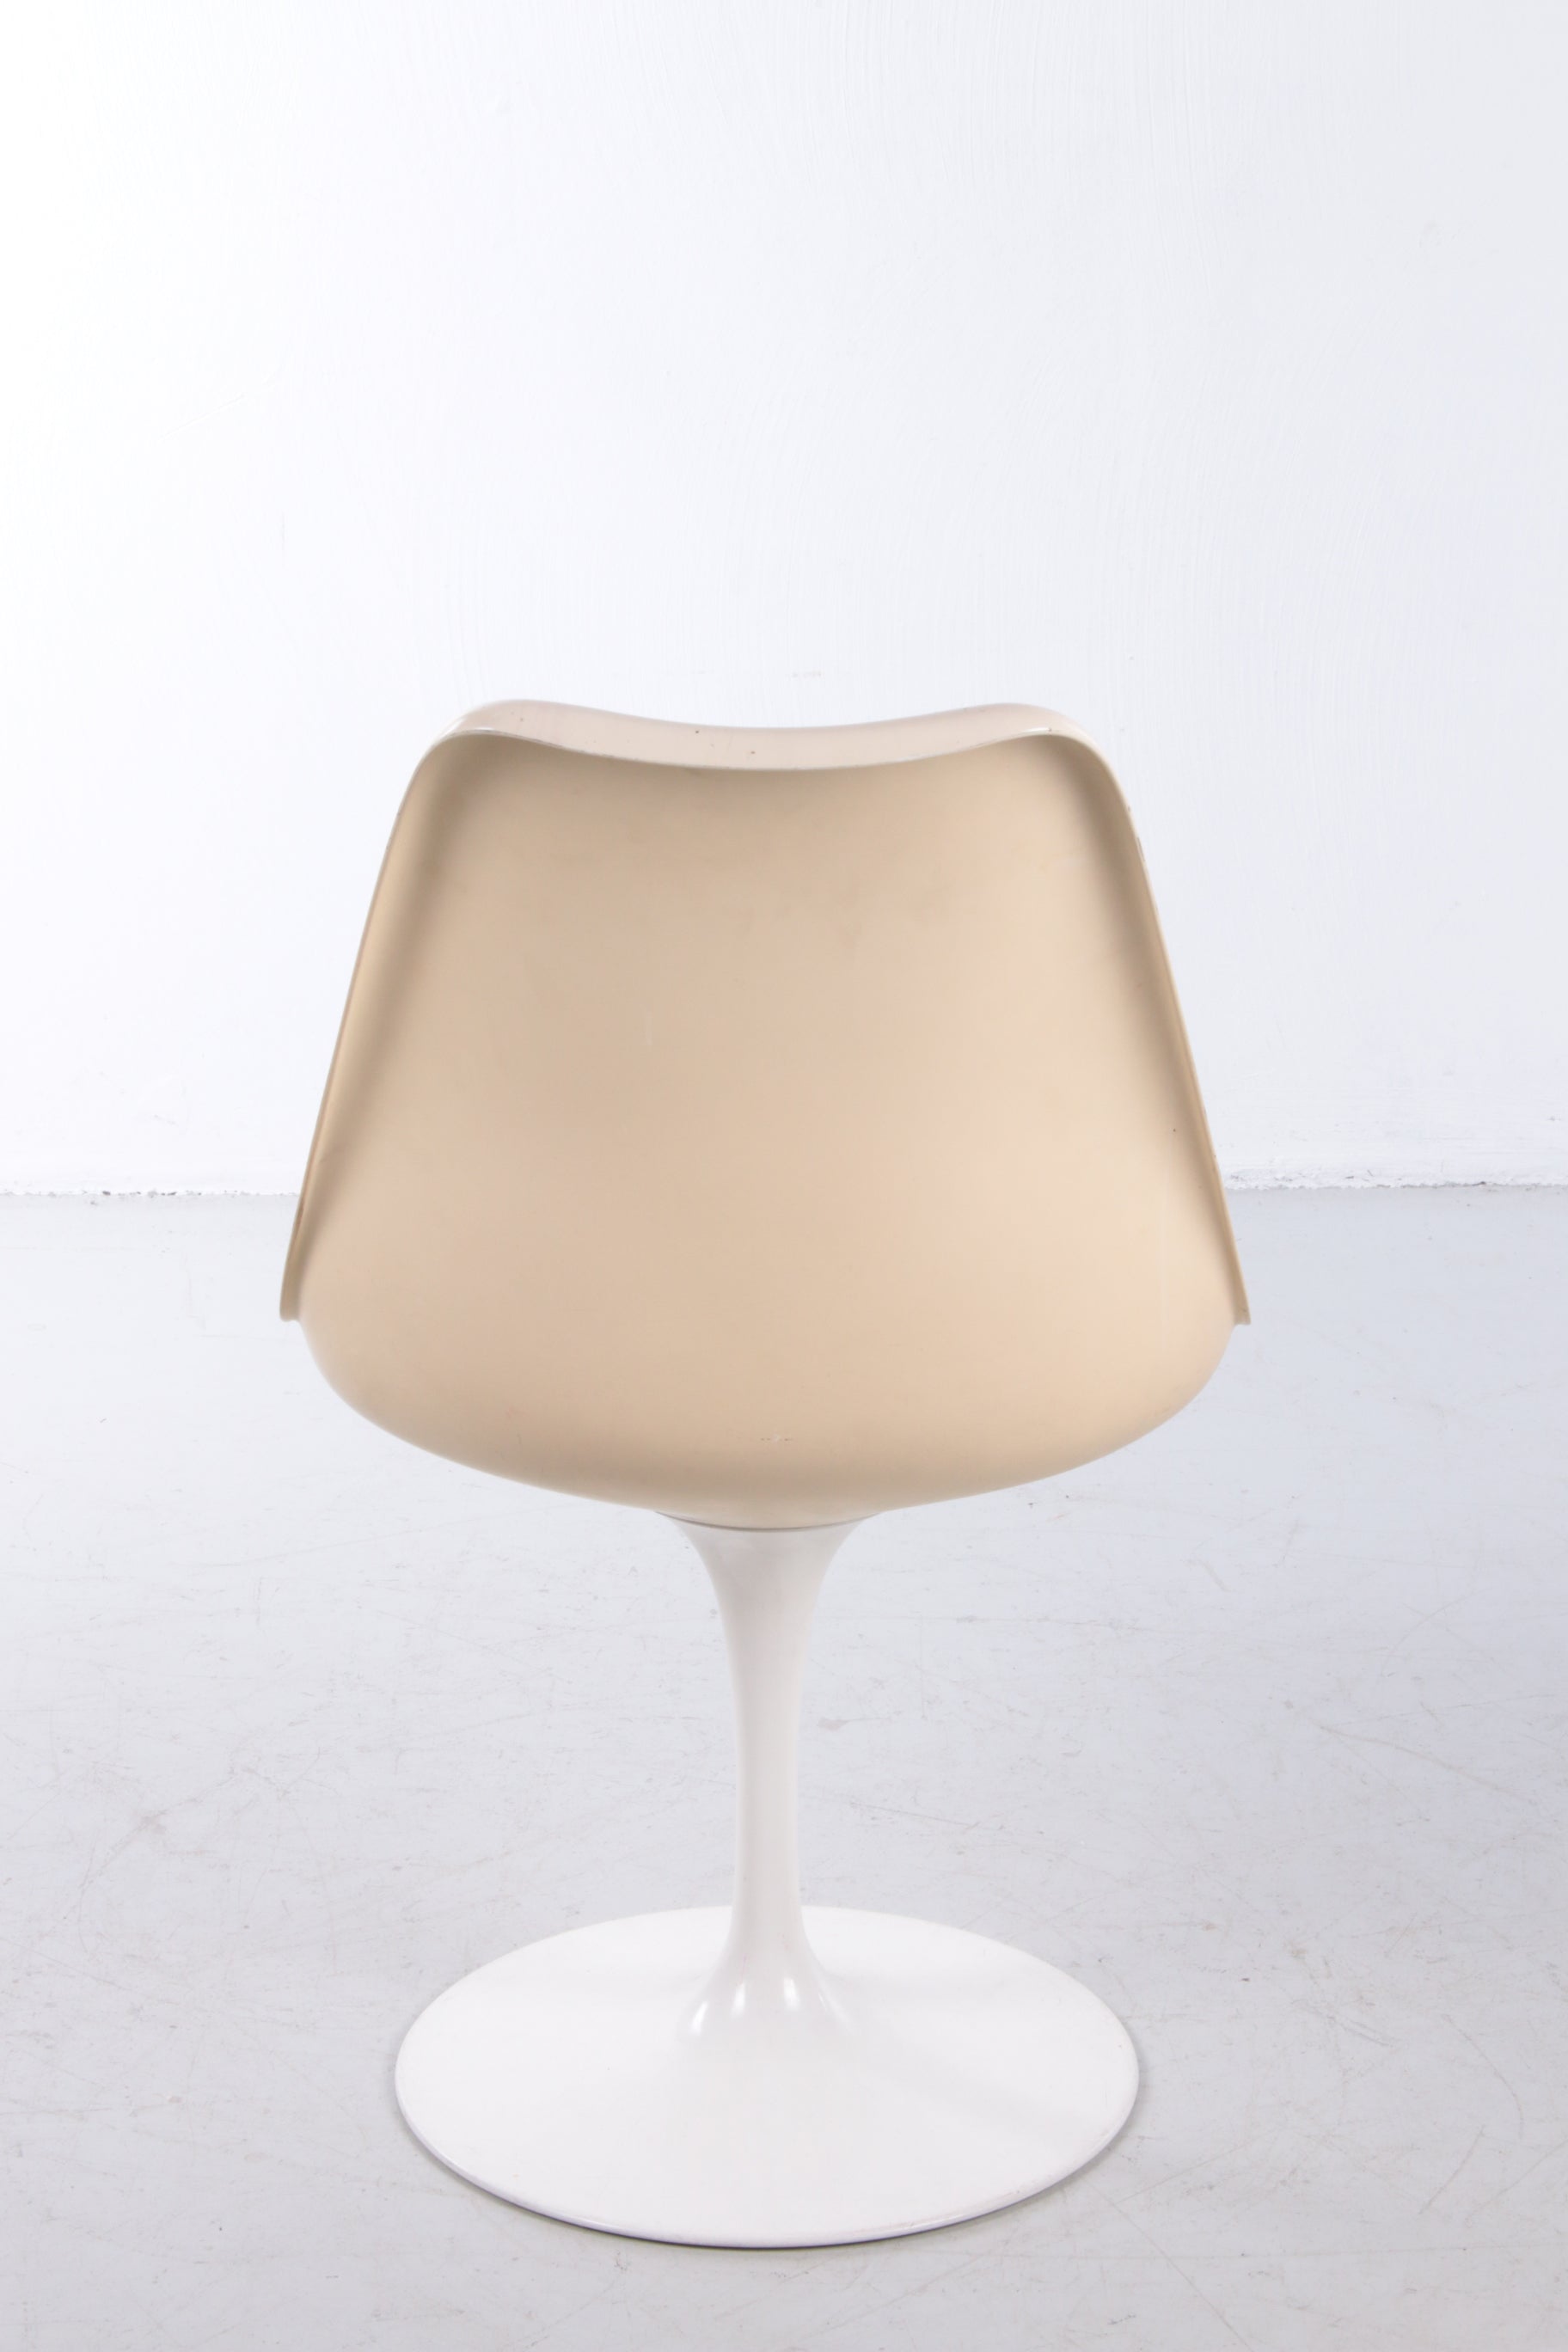 Eero Saarinen Knoll Witte rode draai stoel,60s